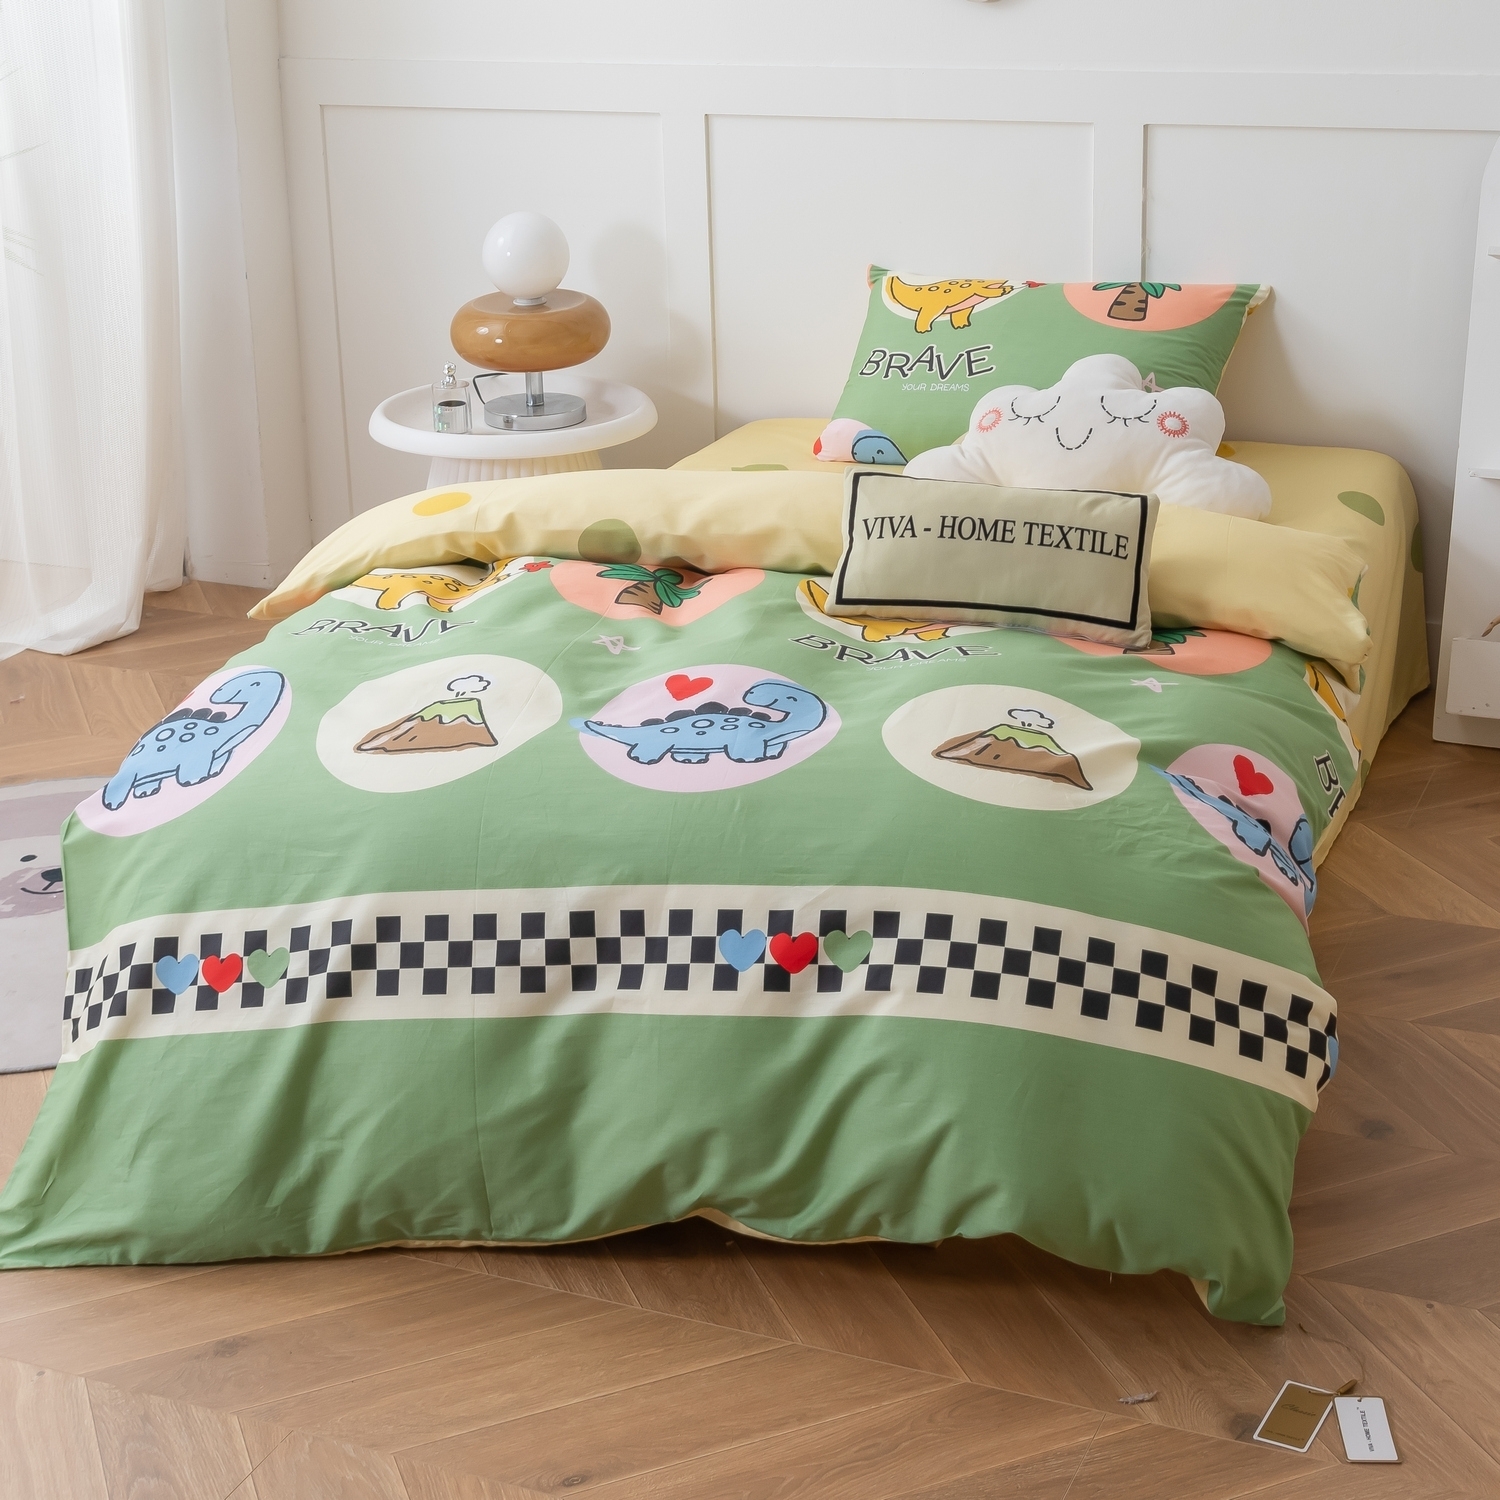 Комплект детского постельного белья Ситрейд  разноцветный CIT-1581440307 комплект постельного белья сатин люкс kids 100% хлопок ситрейд 1 5 спальный